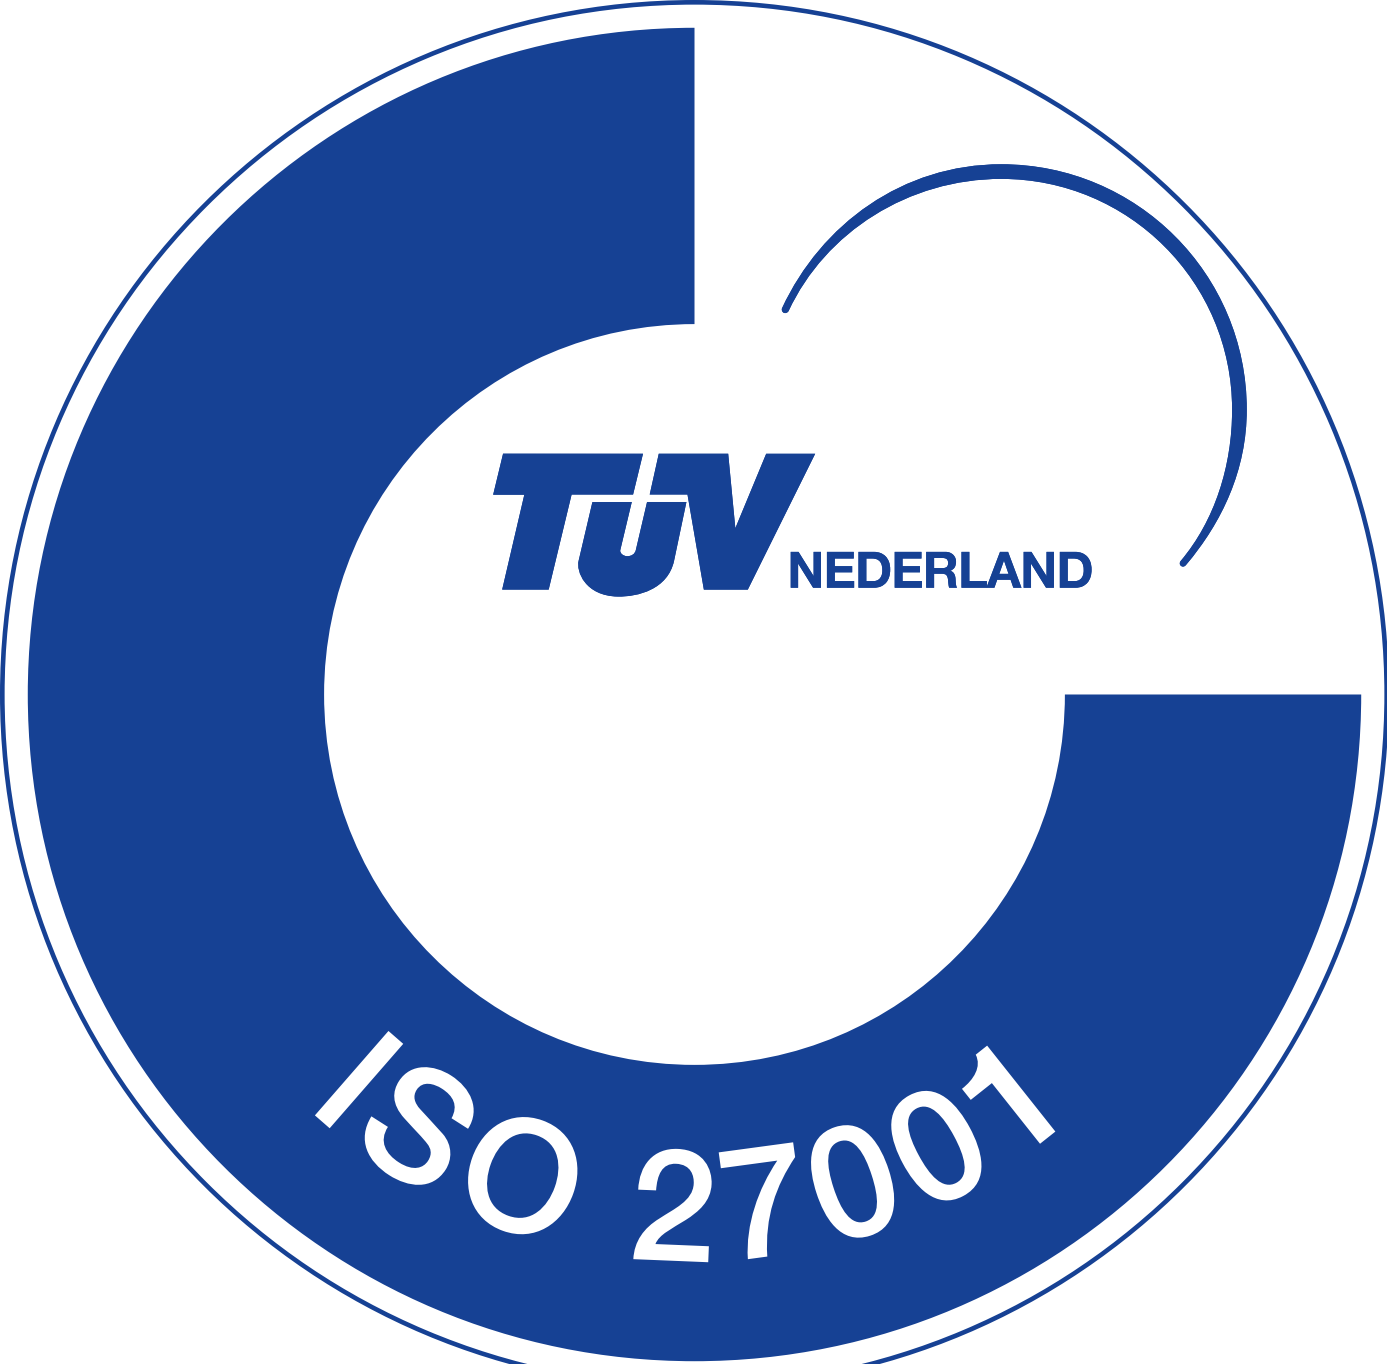 ISO logo TUV nederland